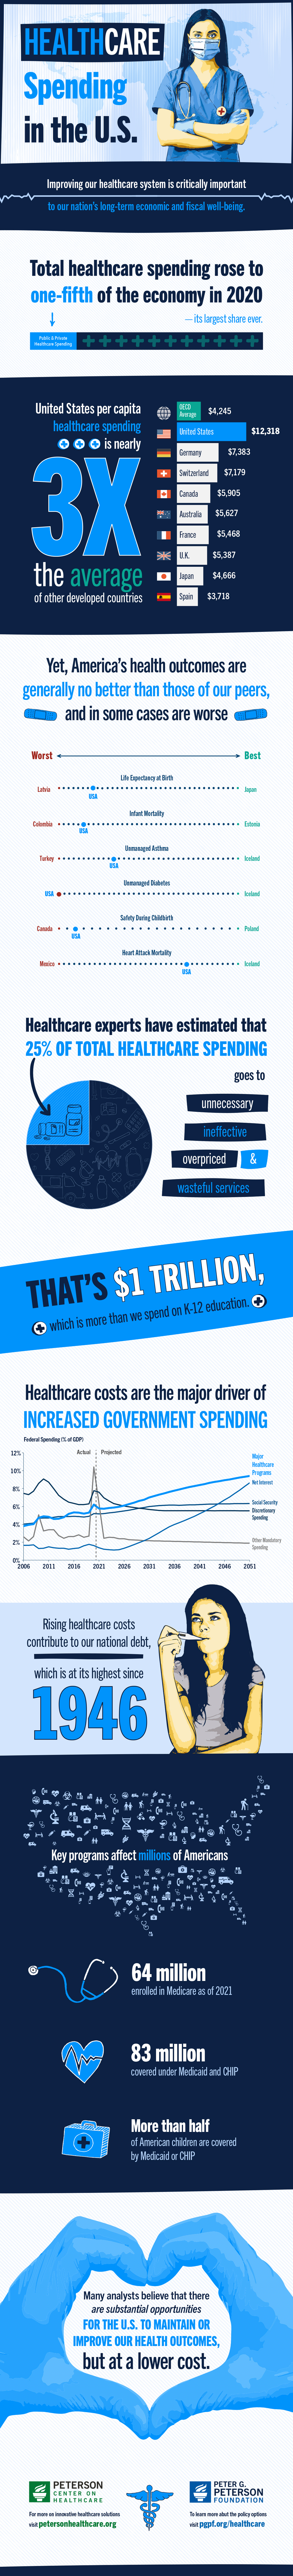 U.S. Healthcare Spending